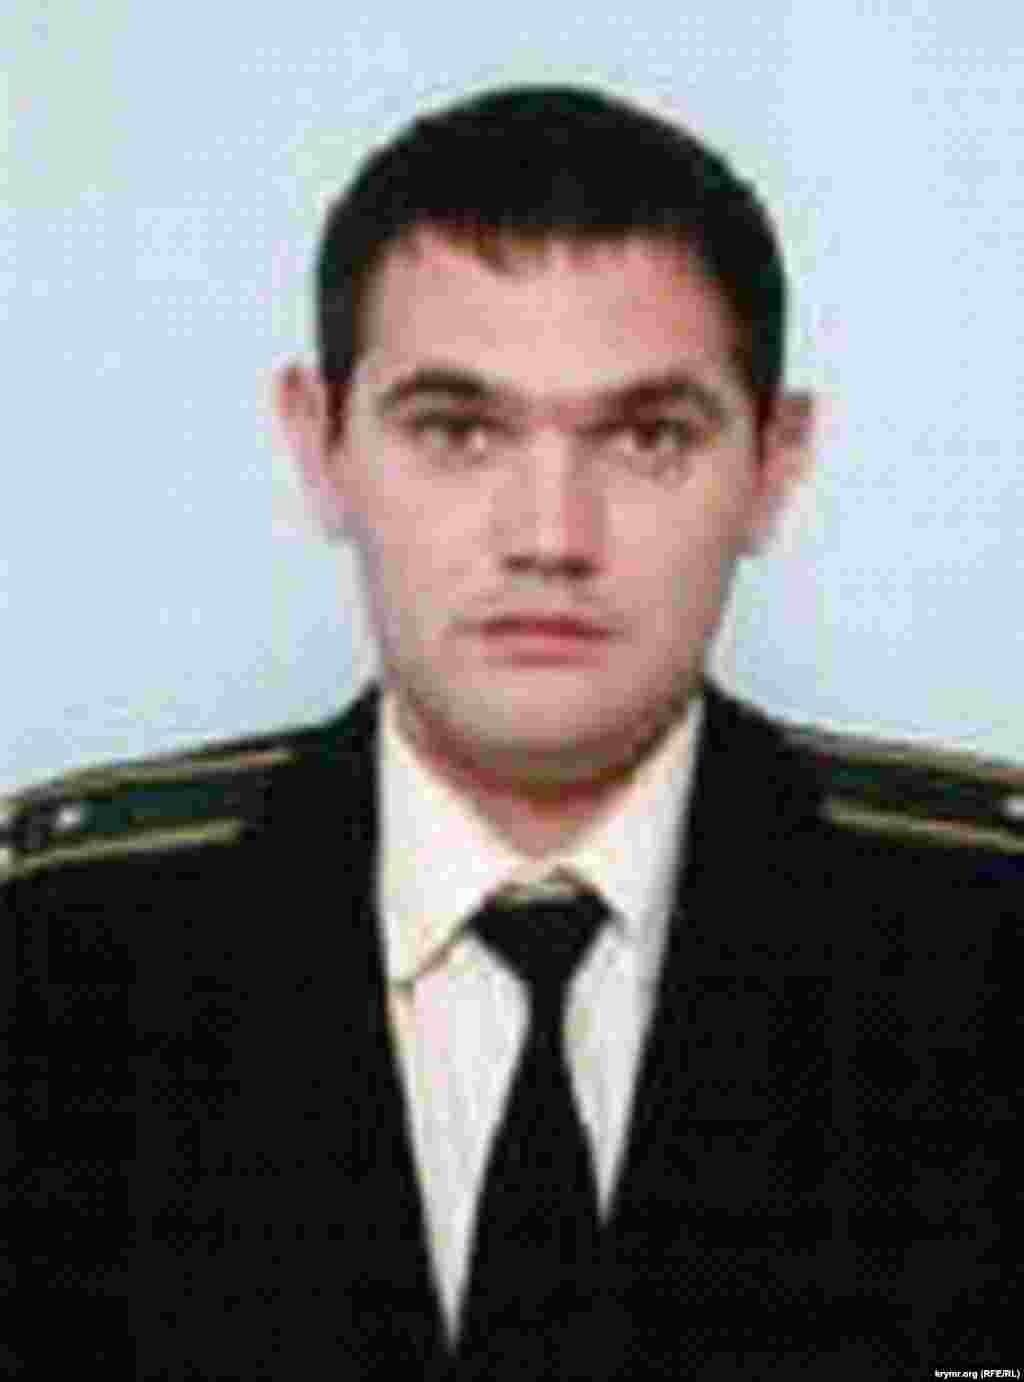 Сергей Лавренов, капитан-лейтенант отдела военной контрразведки управления СБУ в Севастополе